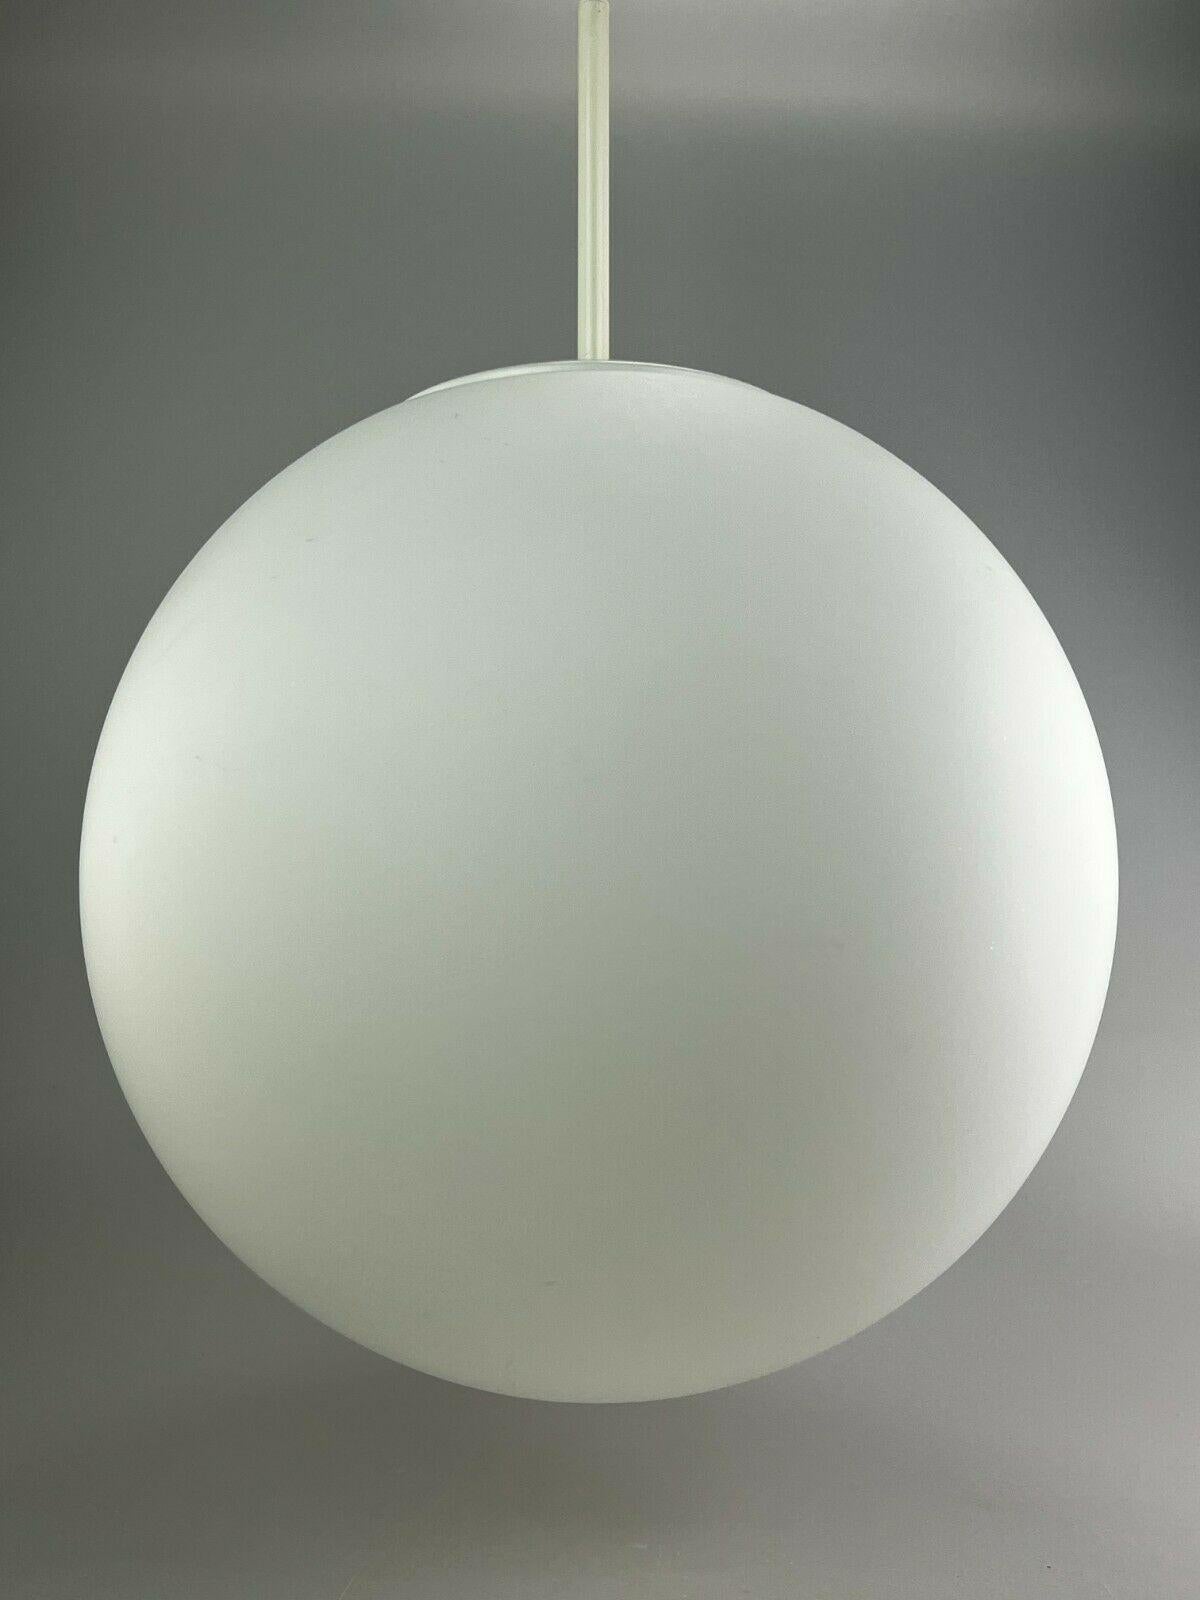 German XXL 60s 70s Lamp Light Ceiling Lamp Limburg Spherical Lamp Ball Design  For Sale